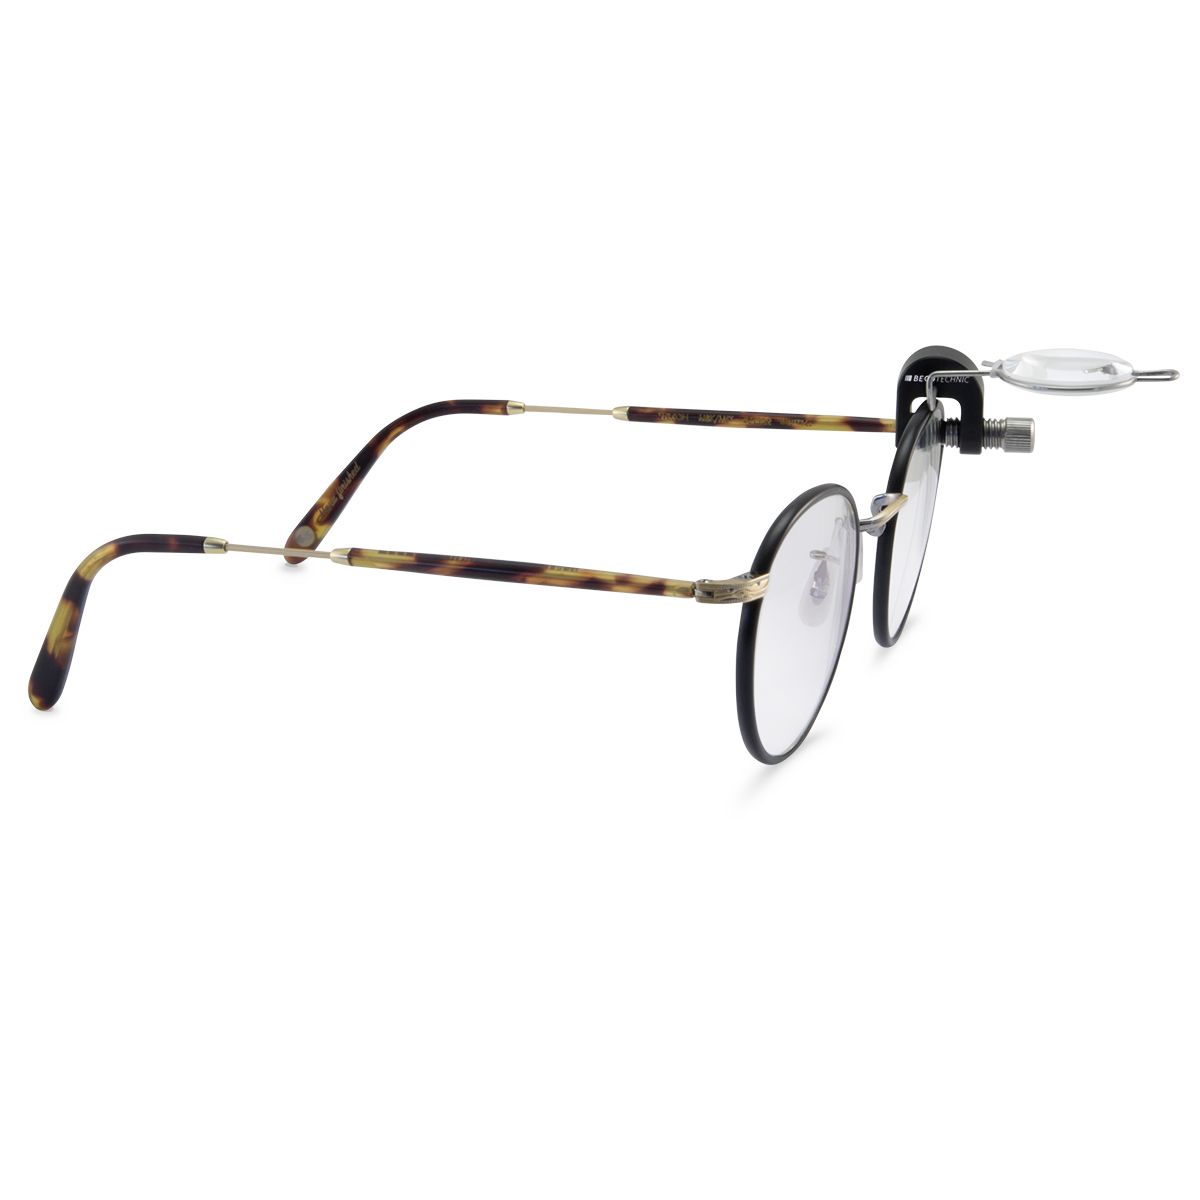 Vergrootglas voor bril, 2,5x, links